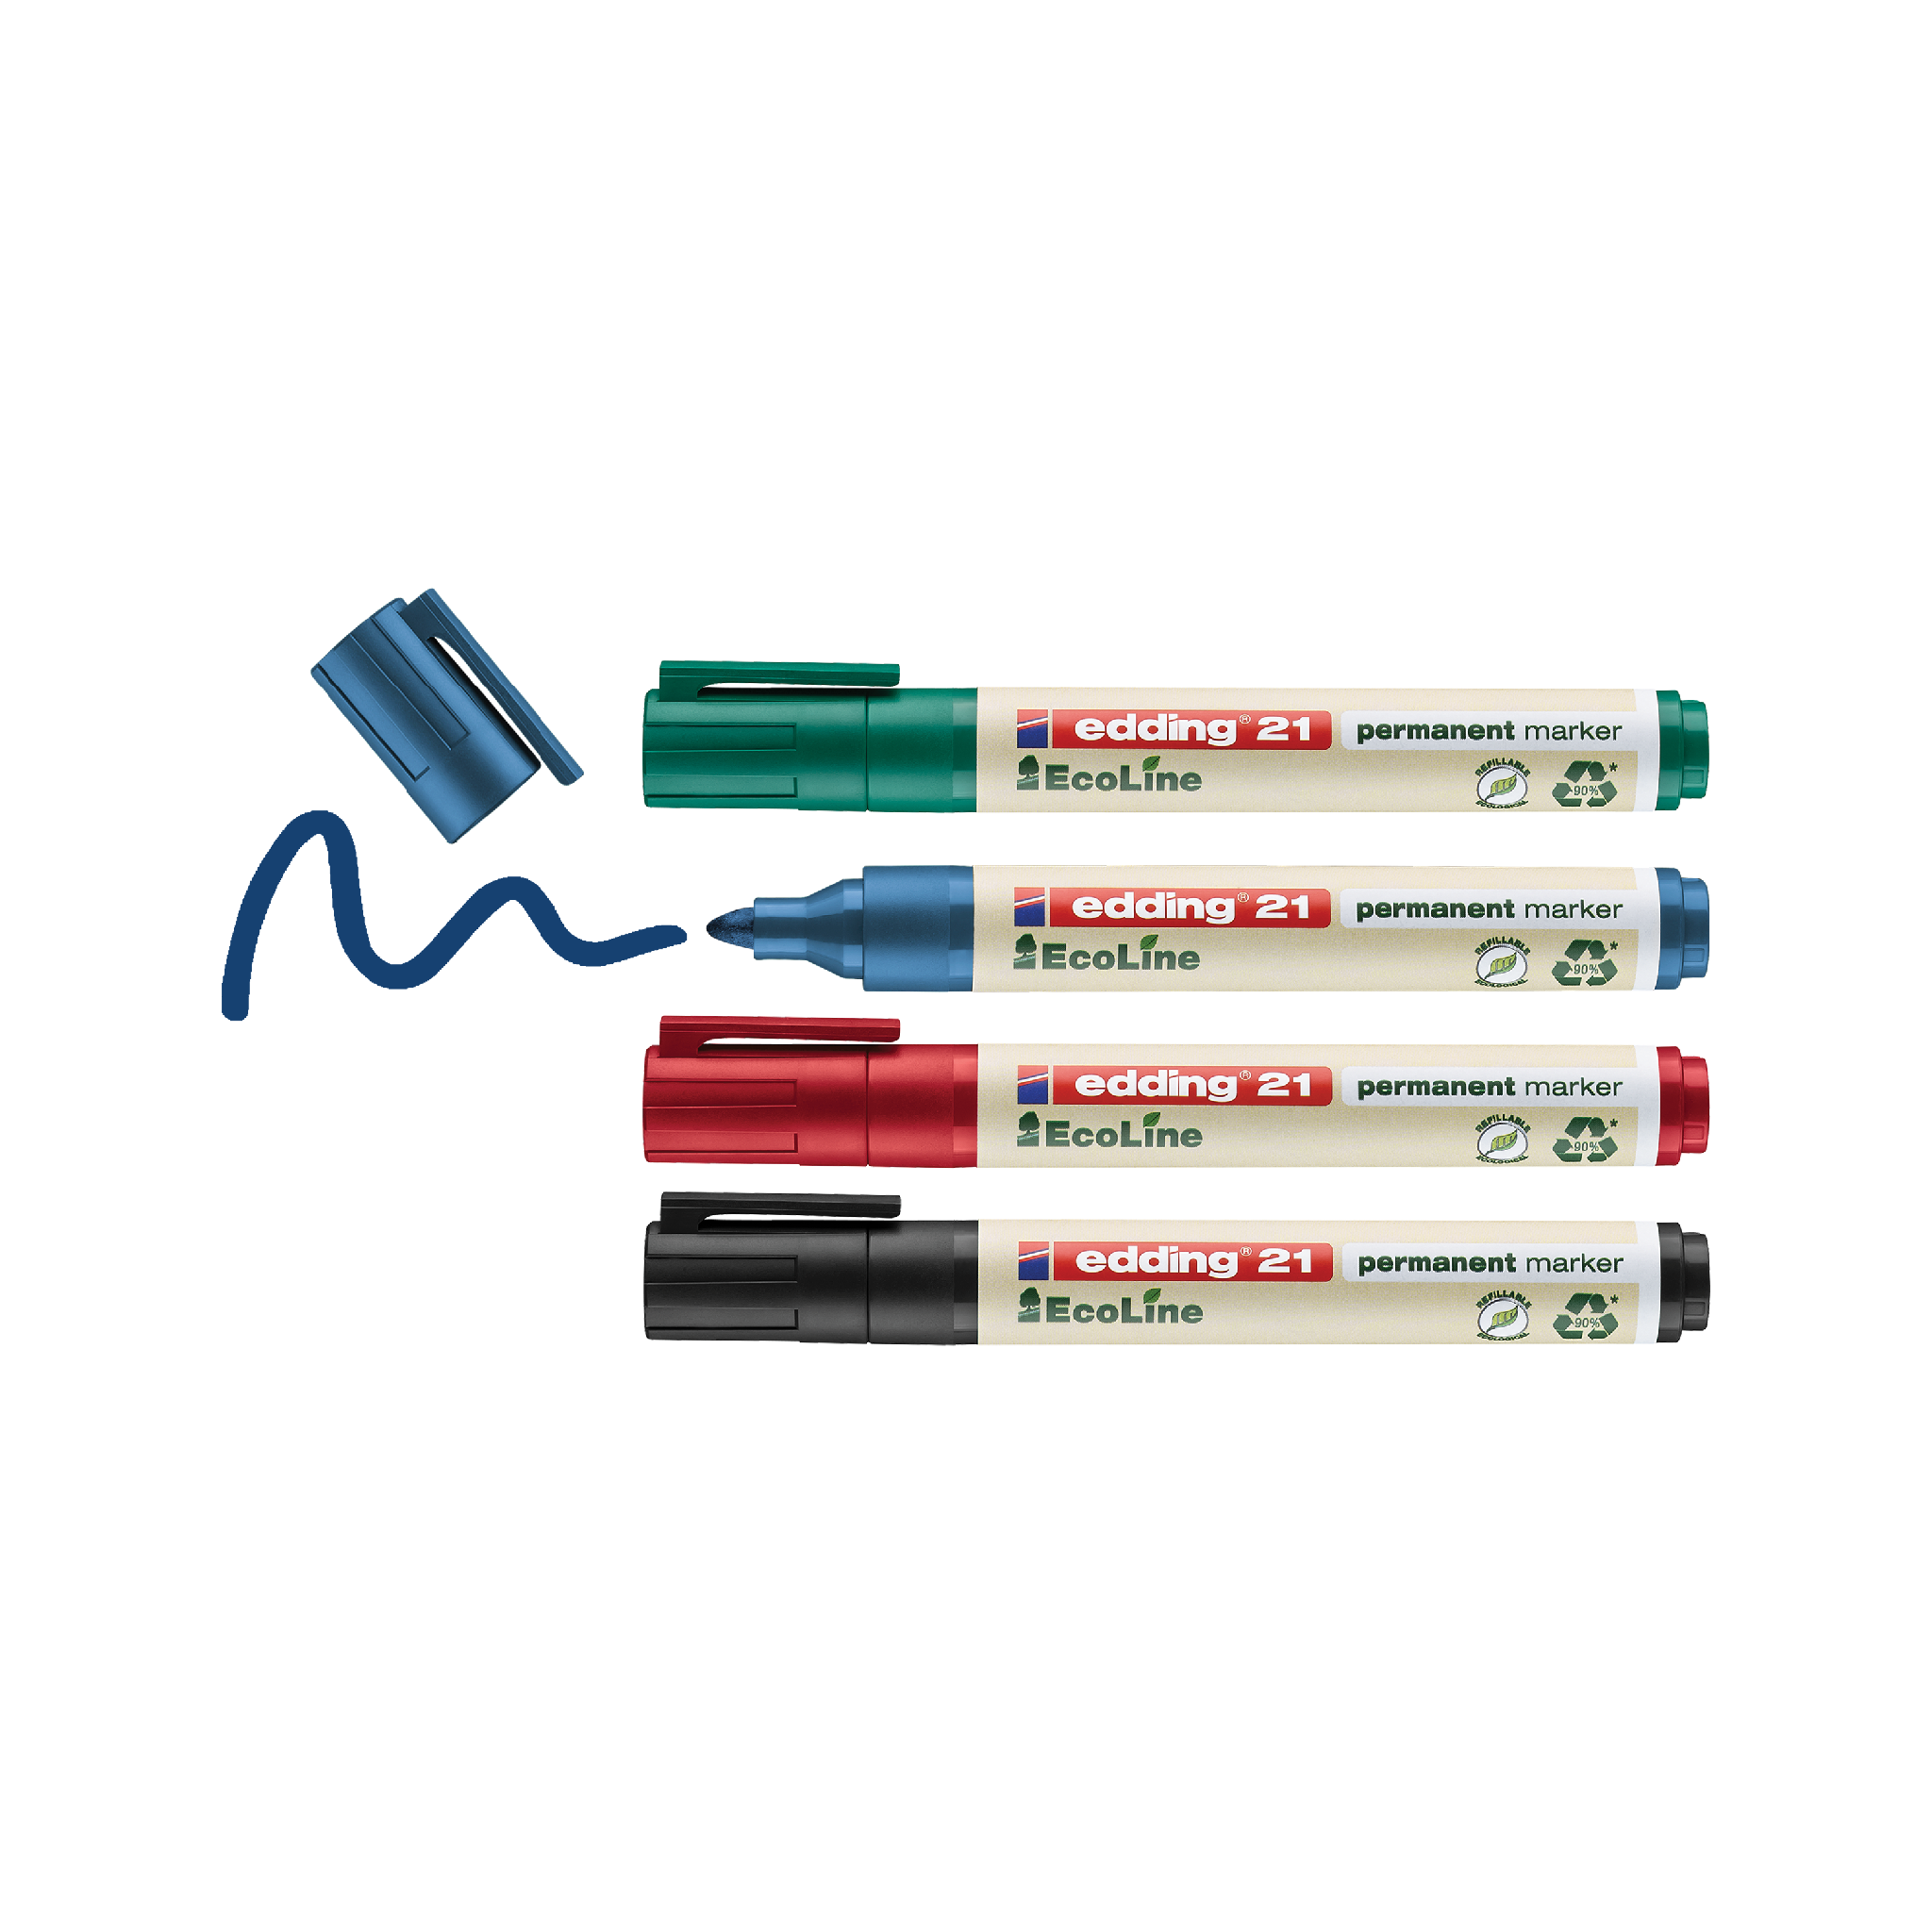 Vier edding 21 EcoLine Permanentmarker 4er-Sets in den Farben Grün, Blau und Rot, mit abgenommenen Kappen und blauem Marker, der eine Kringellinie auf weißem Hintergrund zeichnet. Diese Marker sind umw.